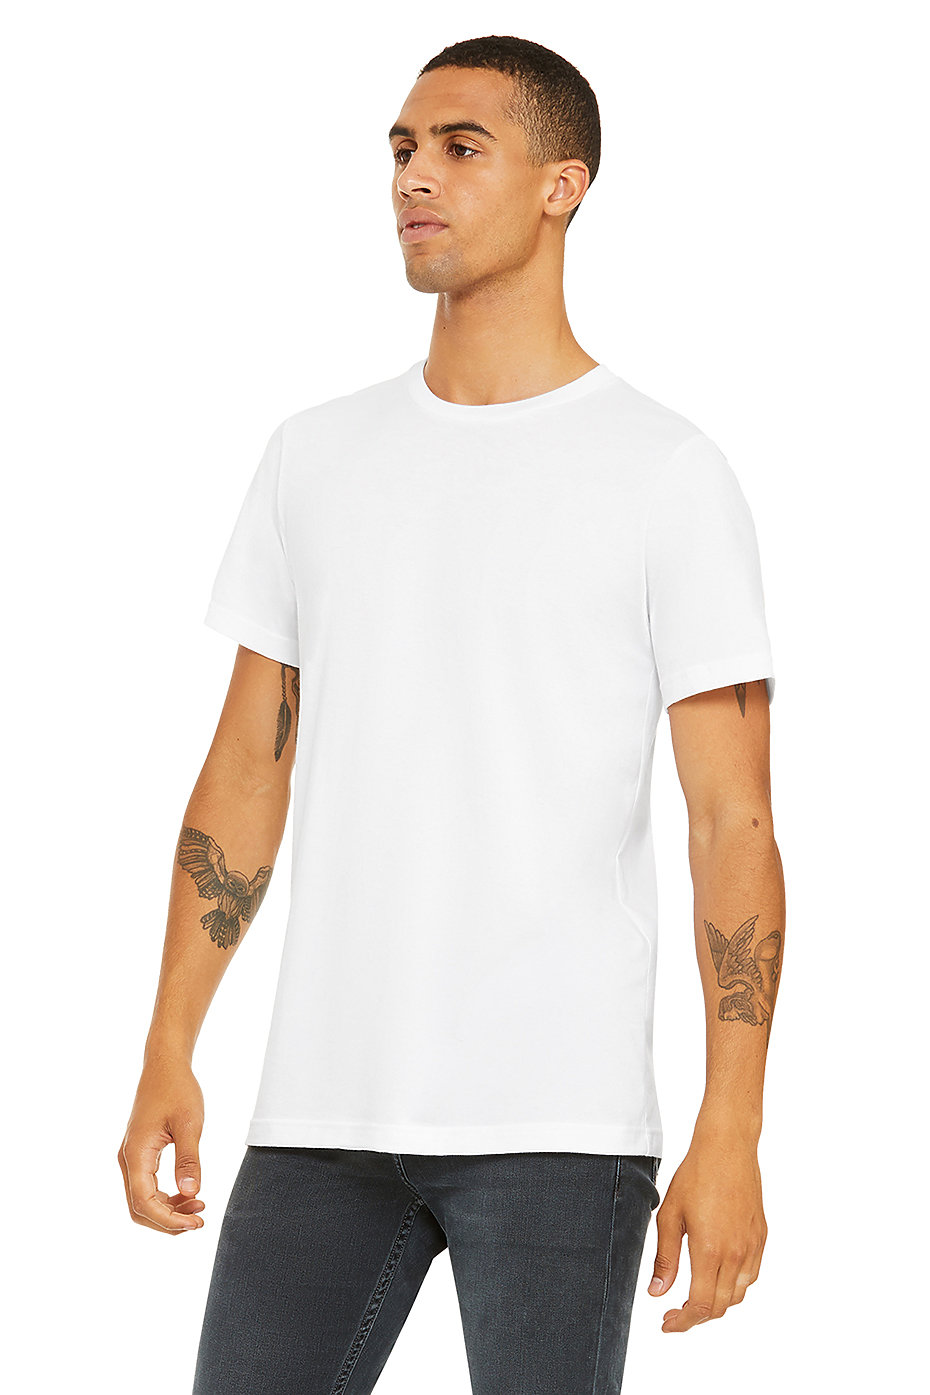 Bella Canvas Mens Jersey Short-Sleeve T-Shirt